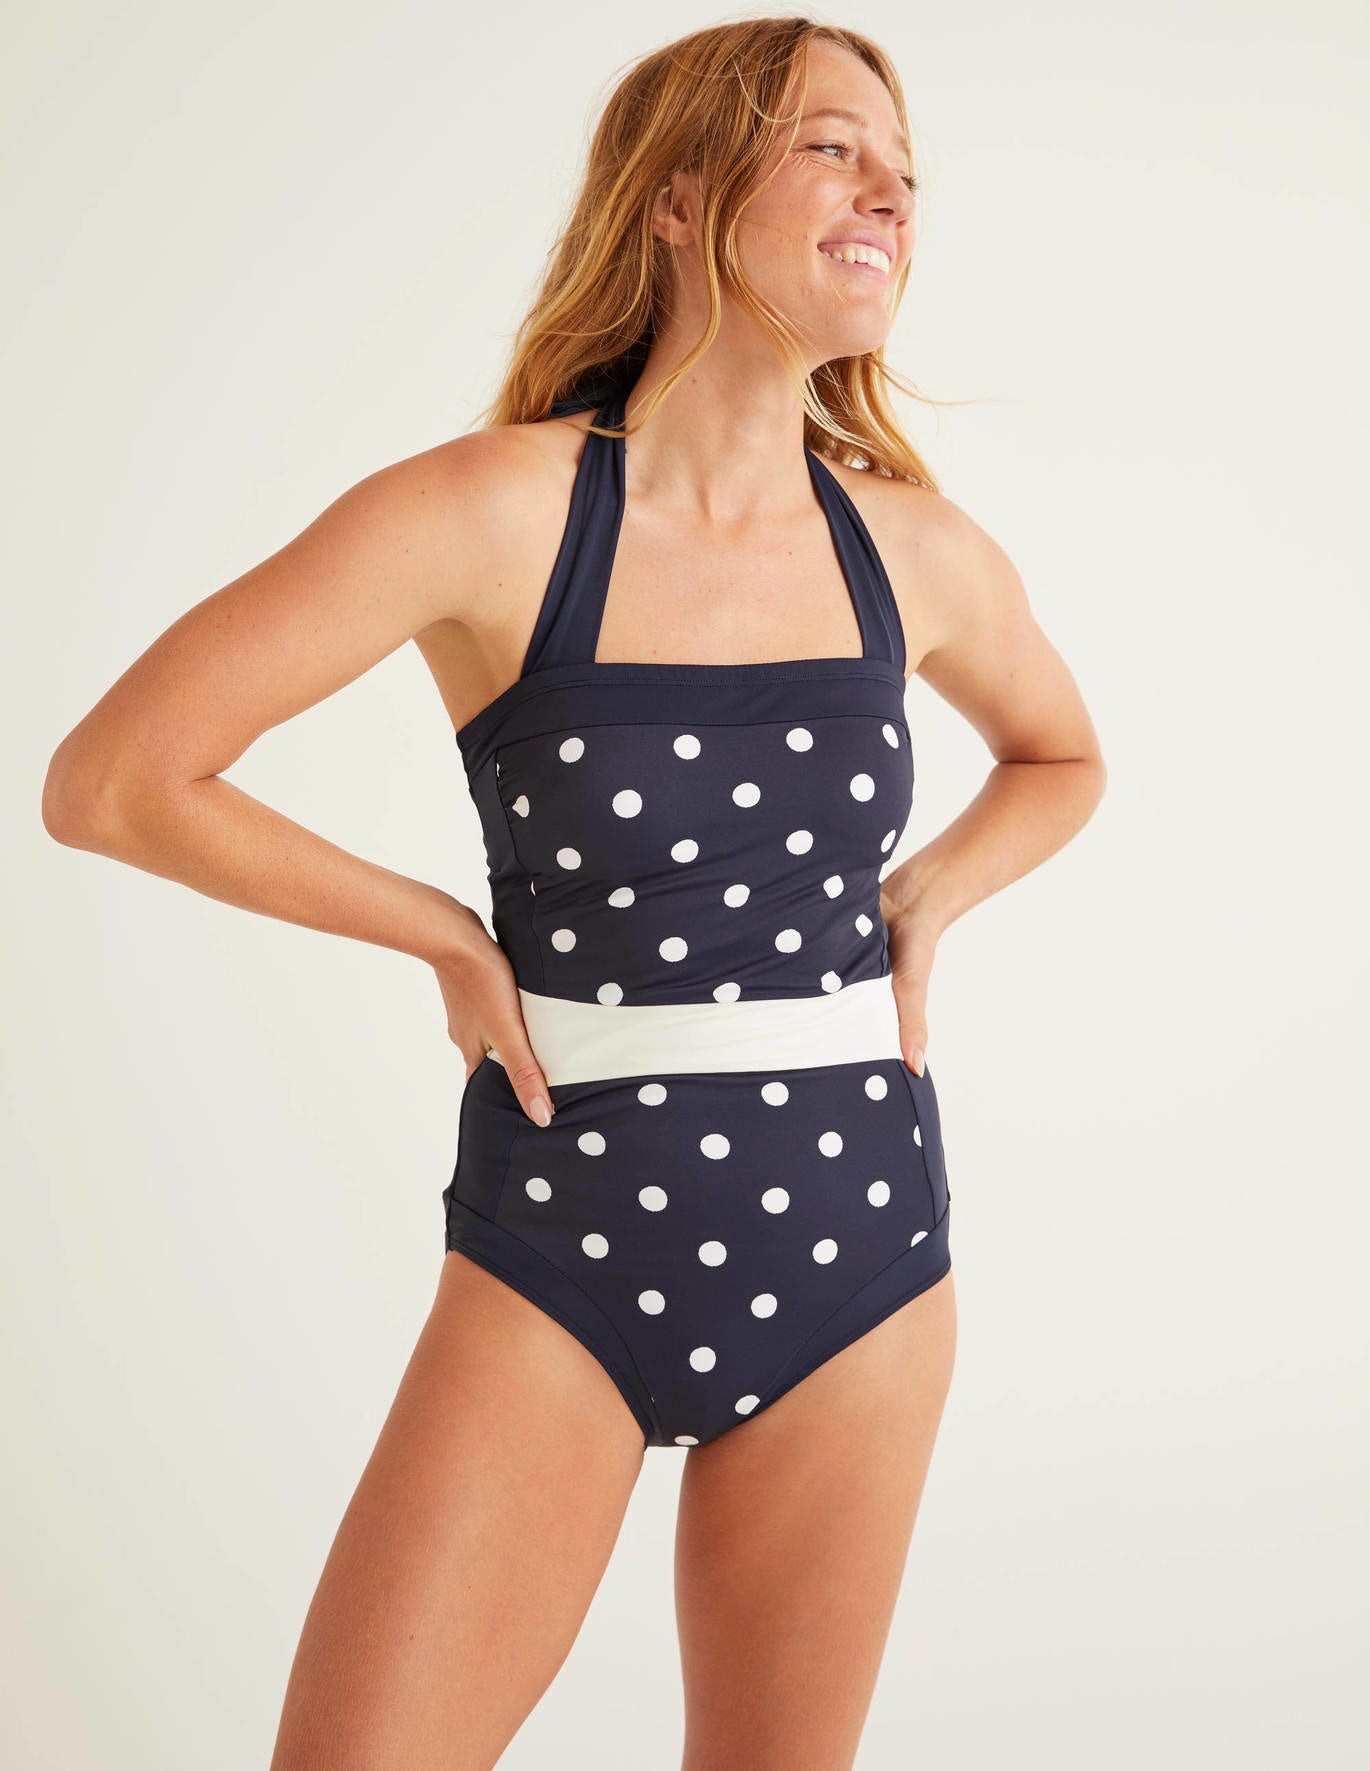 Boden Santorini Swimsuit - Navy, Linear Brand Spot